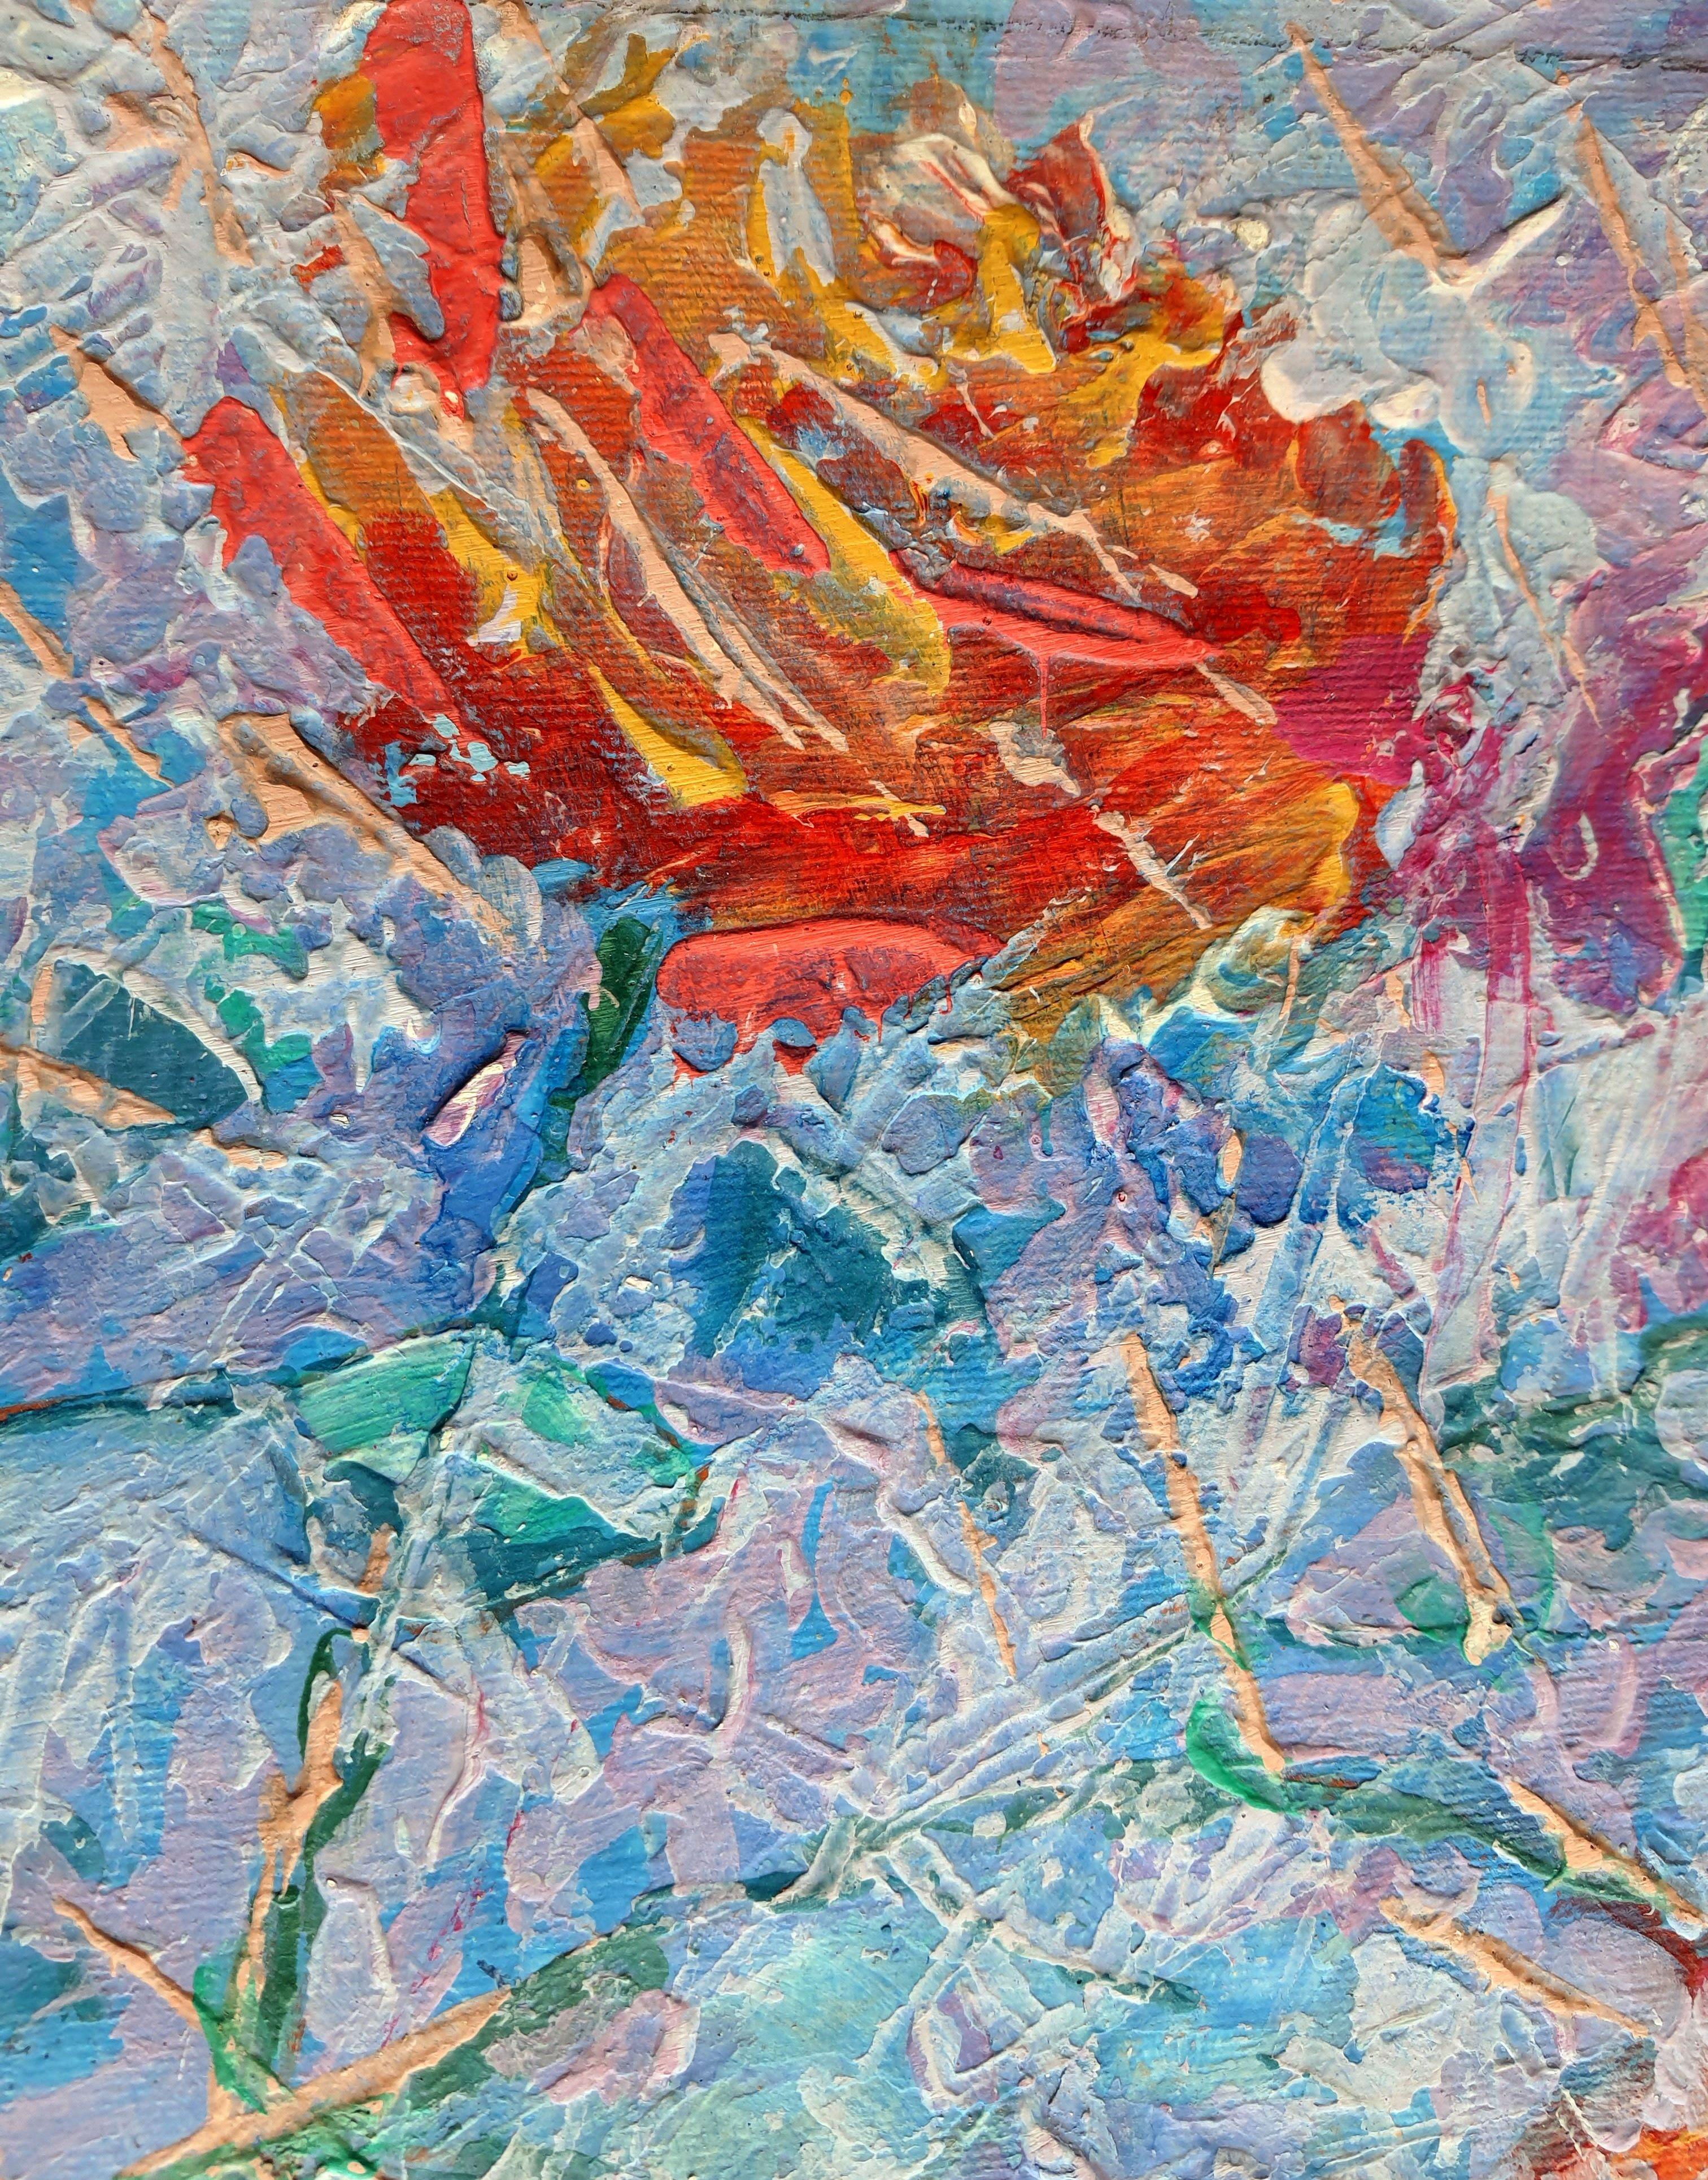 Fresh Roses - Impressionist Painting by RAKHMET REDZHEPOV (RAMZI)